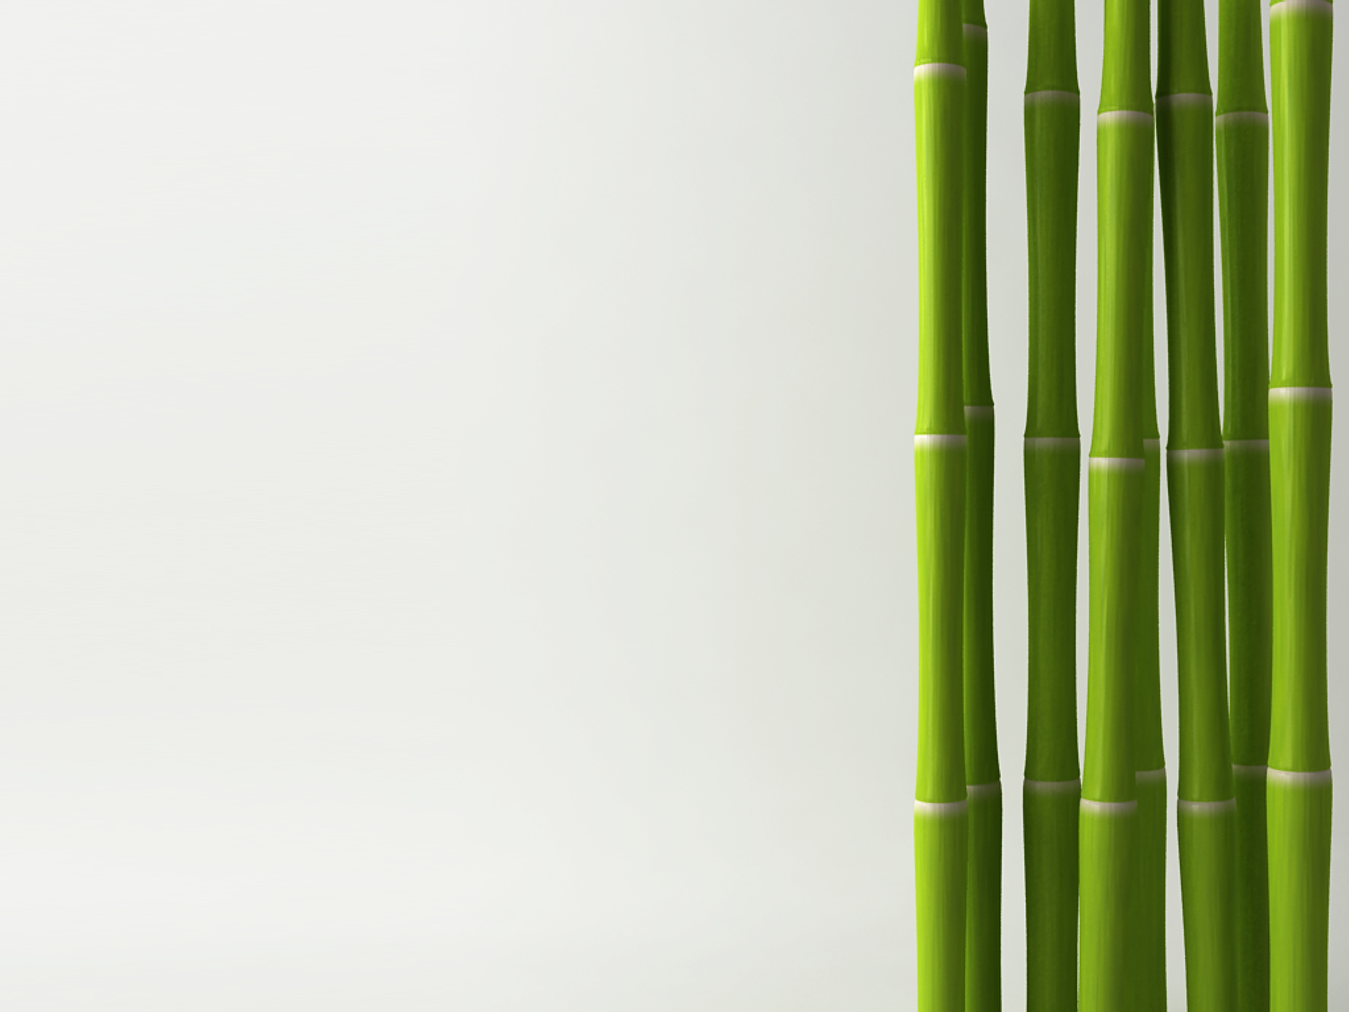 Биг бамбу big bambooo com. Бамбук Широшима. Бамбук по7бм024. Бамбук на белом фоне. Бамбуковые стебли.